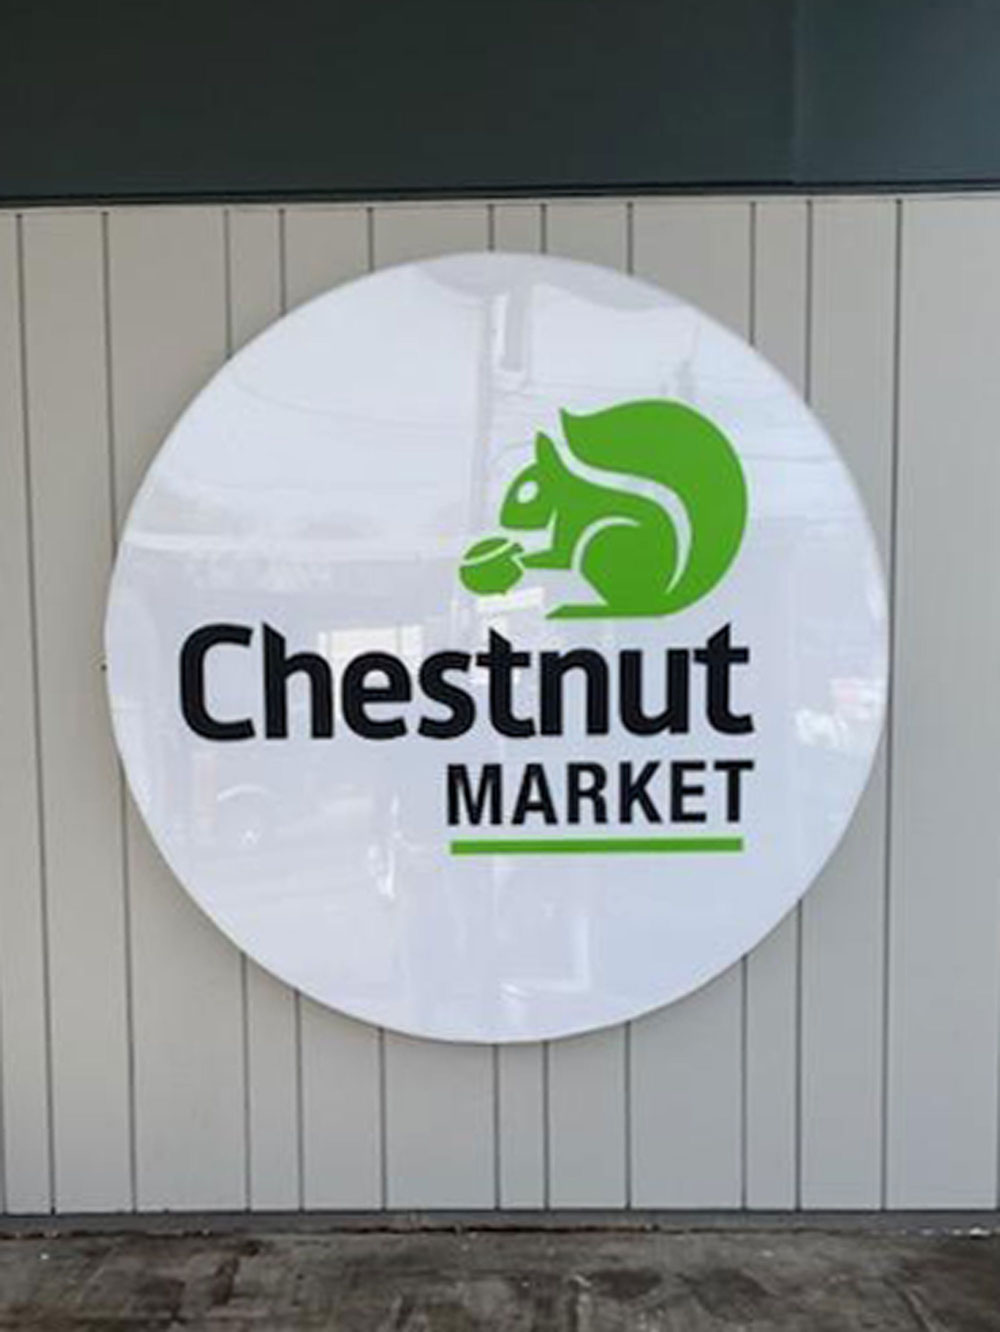 Chestnut Market signage rebrand